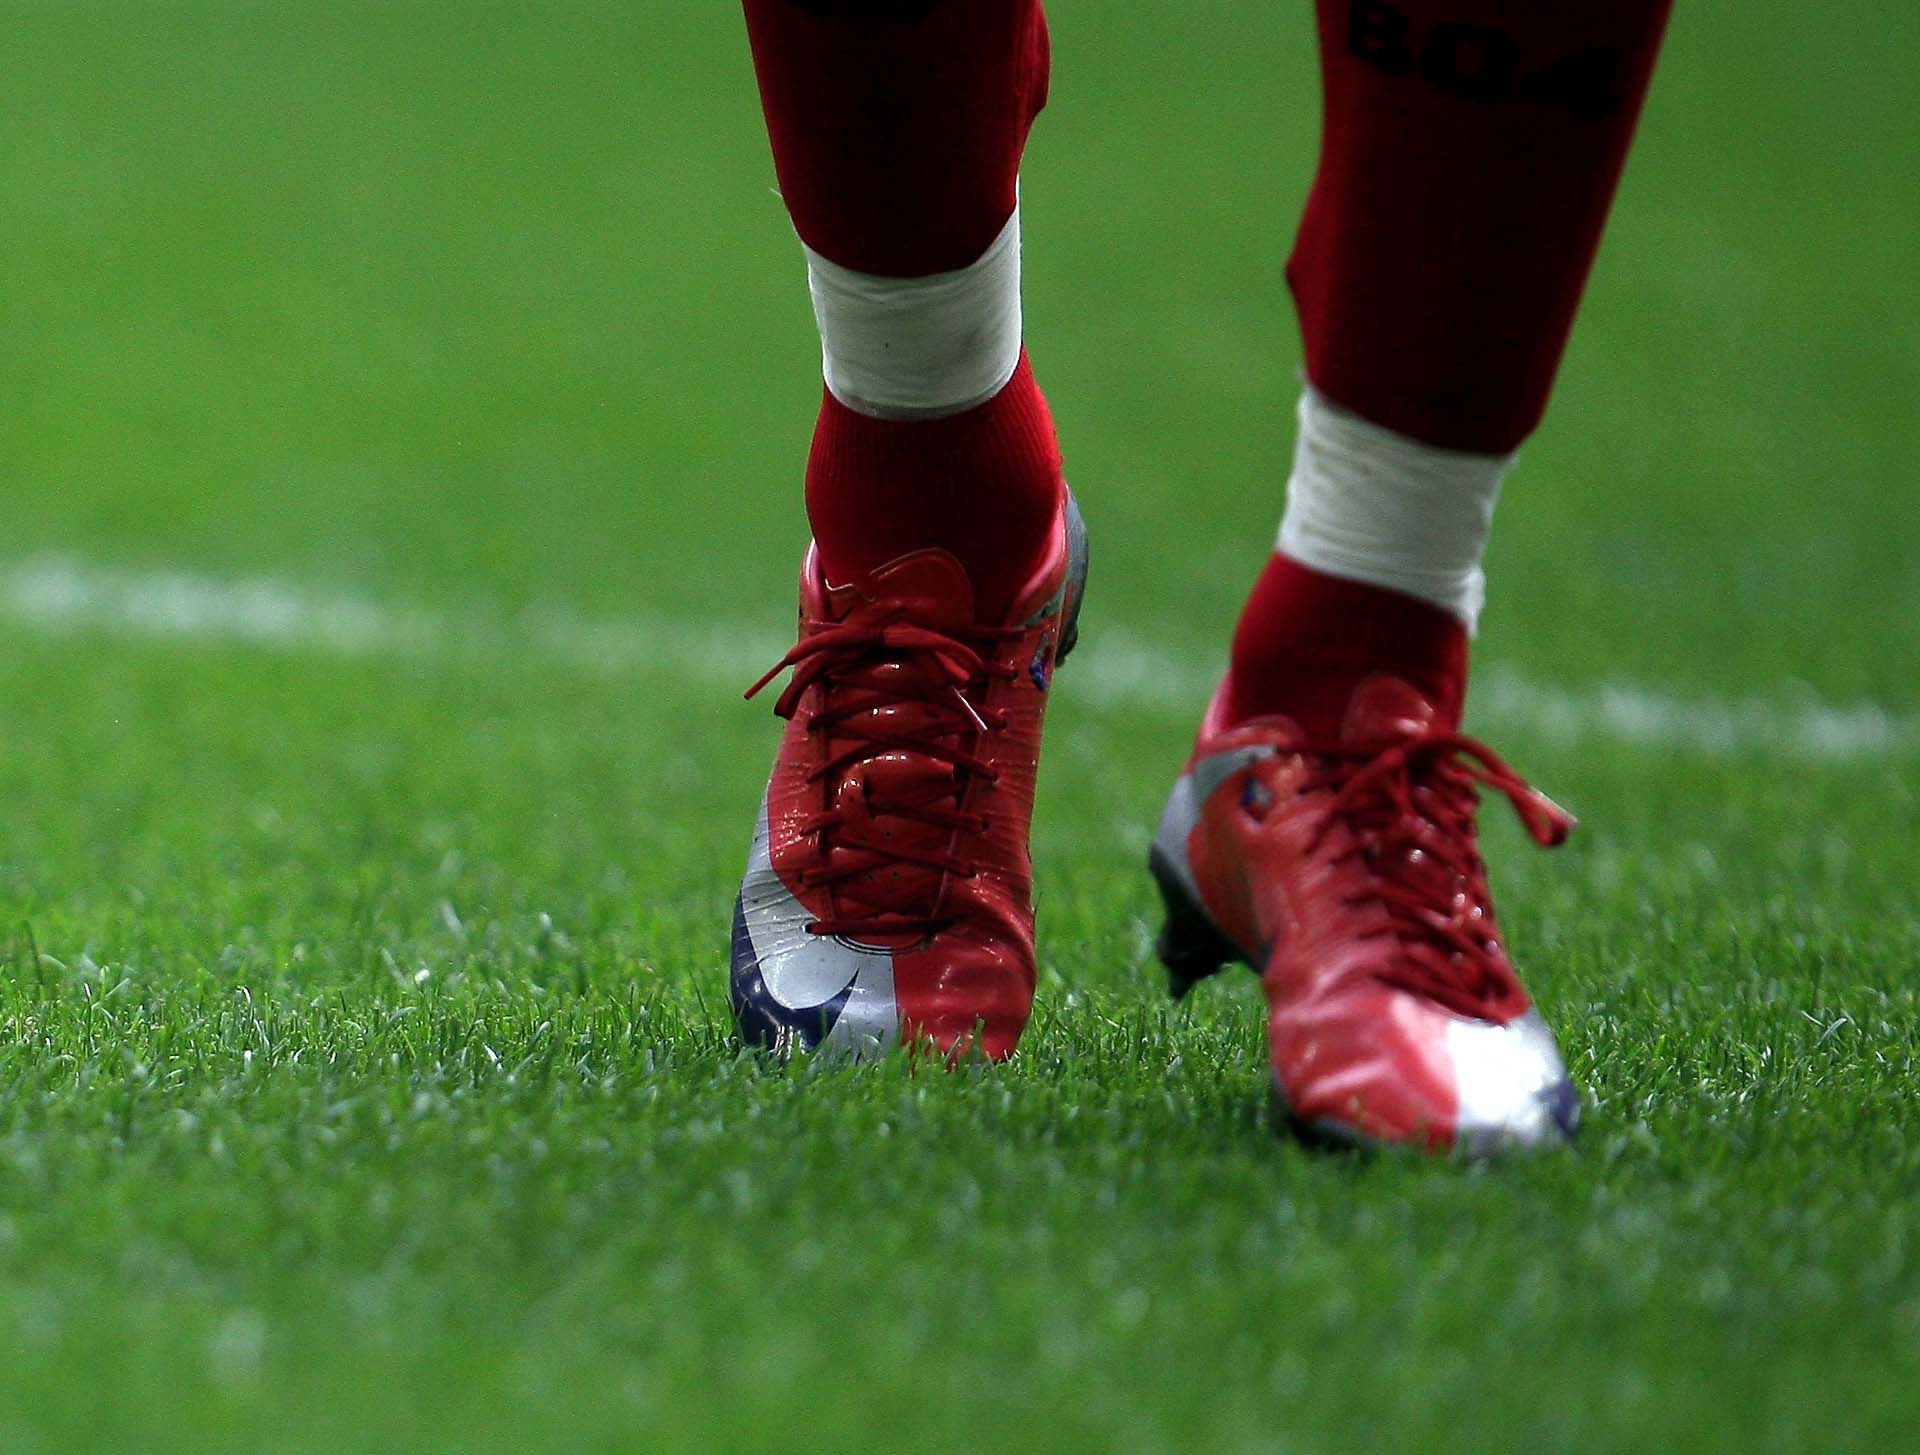 Mang một đôi giày bóng đá ôm chân sẽ giúp bạn cảm giác bóng tốt hơn rất nhiều